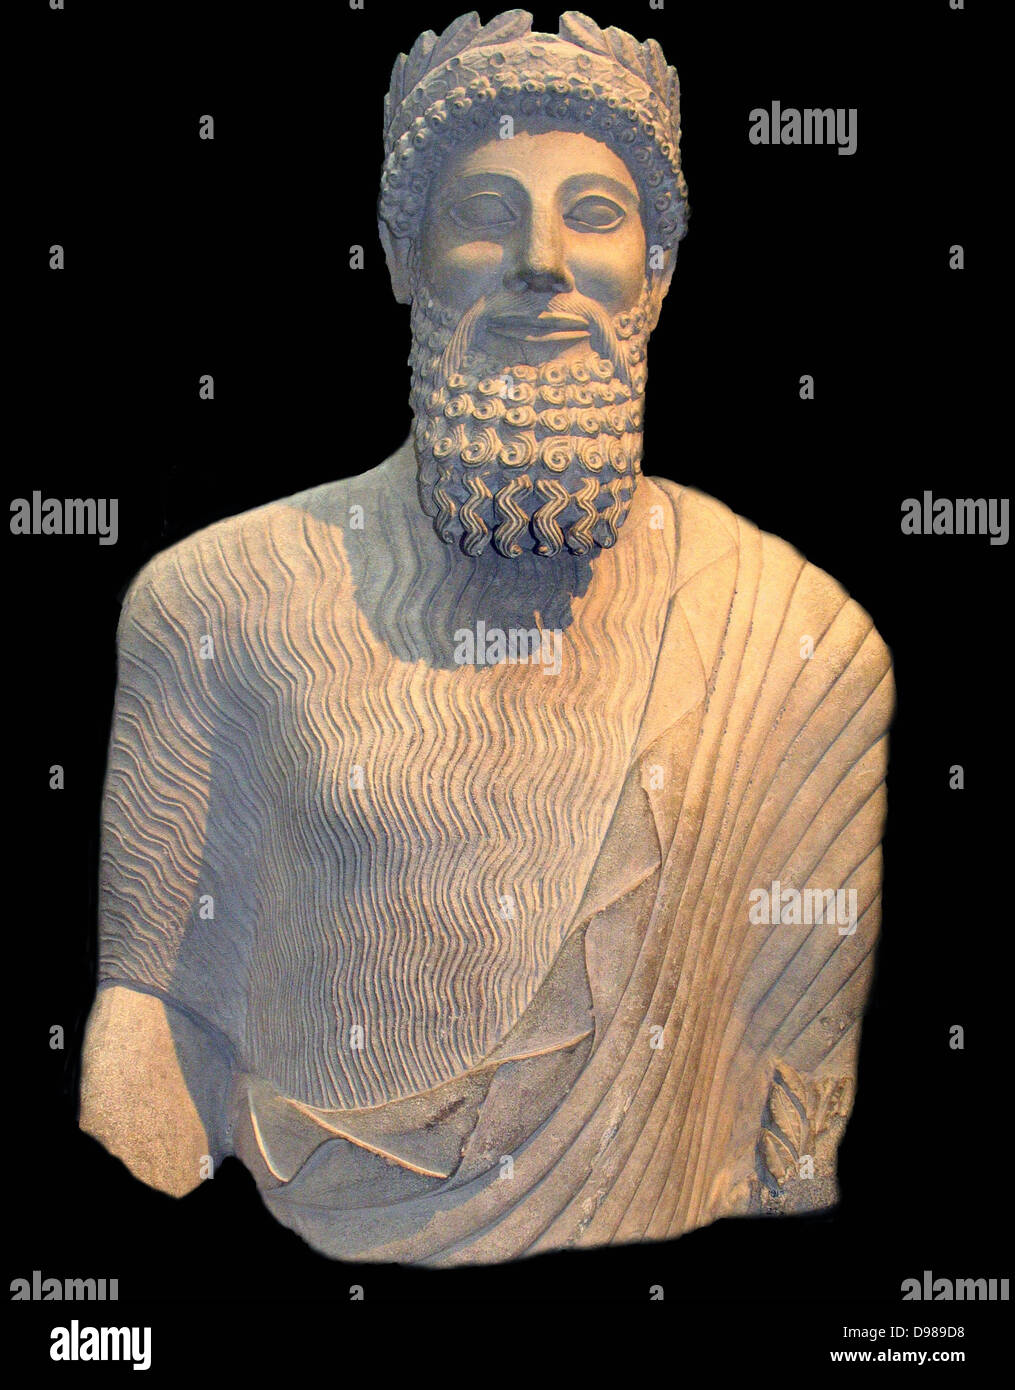 Colossale statua di pietra calcarea di un uomo barbuto Foto Stock